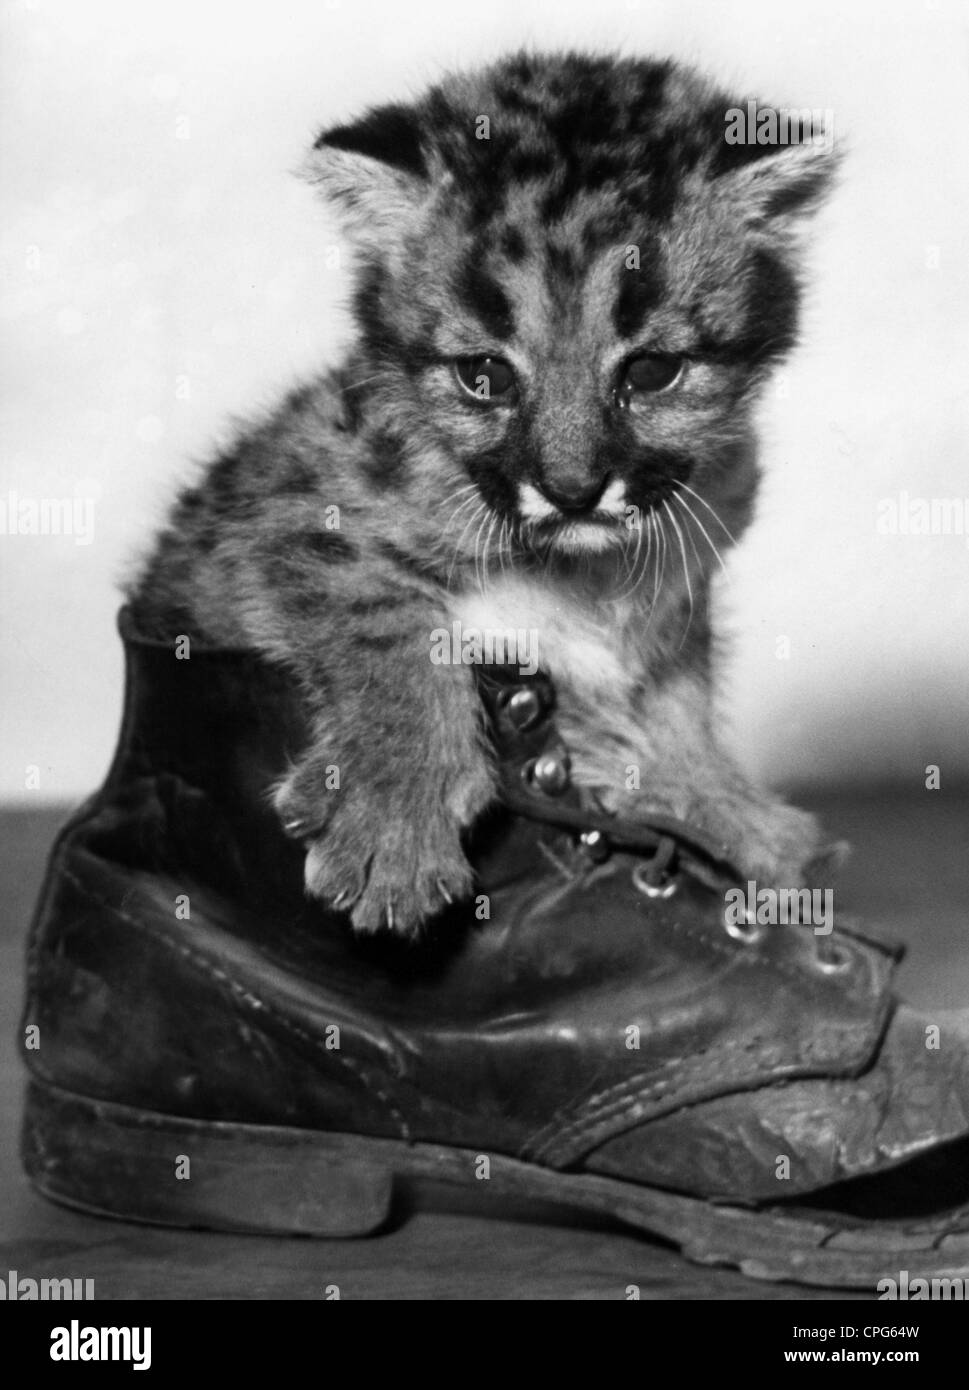 zoologie, mammifères, chats (Felidae), couguar (Puma concolor), cub dans une ancienne chaussure, Frankfurt Zoological Garden, Allemagne, avril 1957, droits additionnels-Clearences-non disponible Banque D'Images